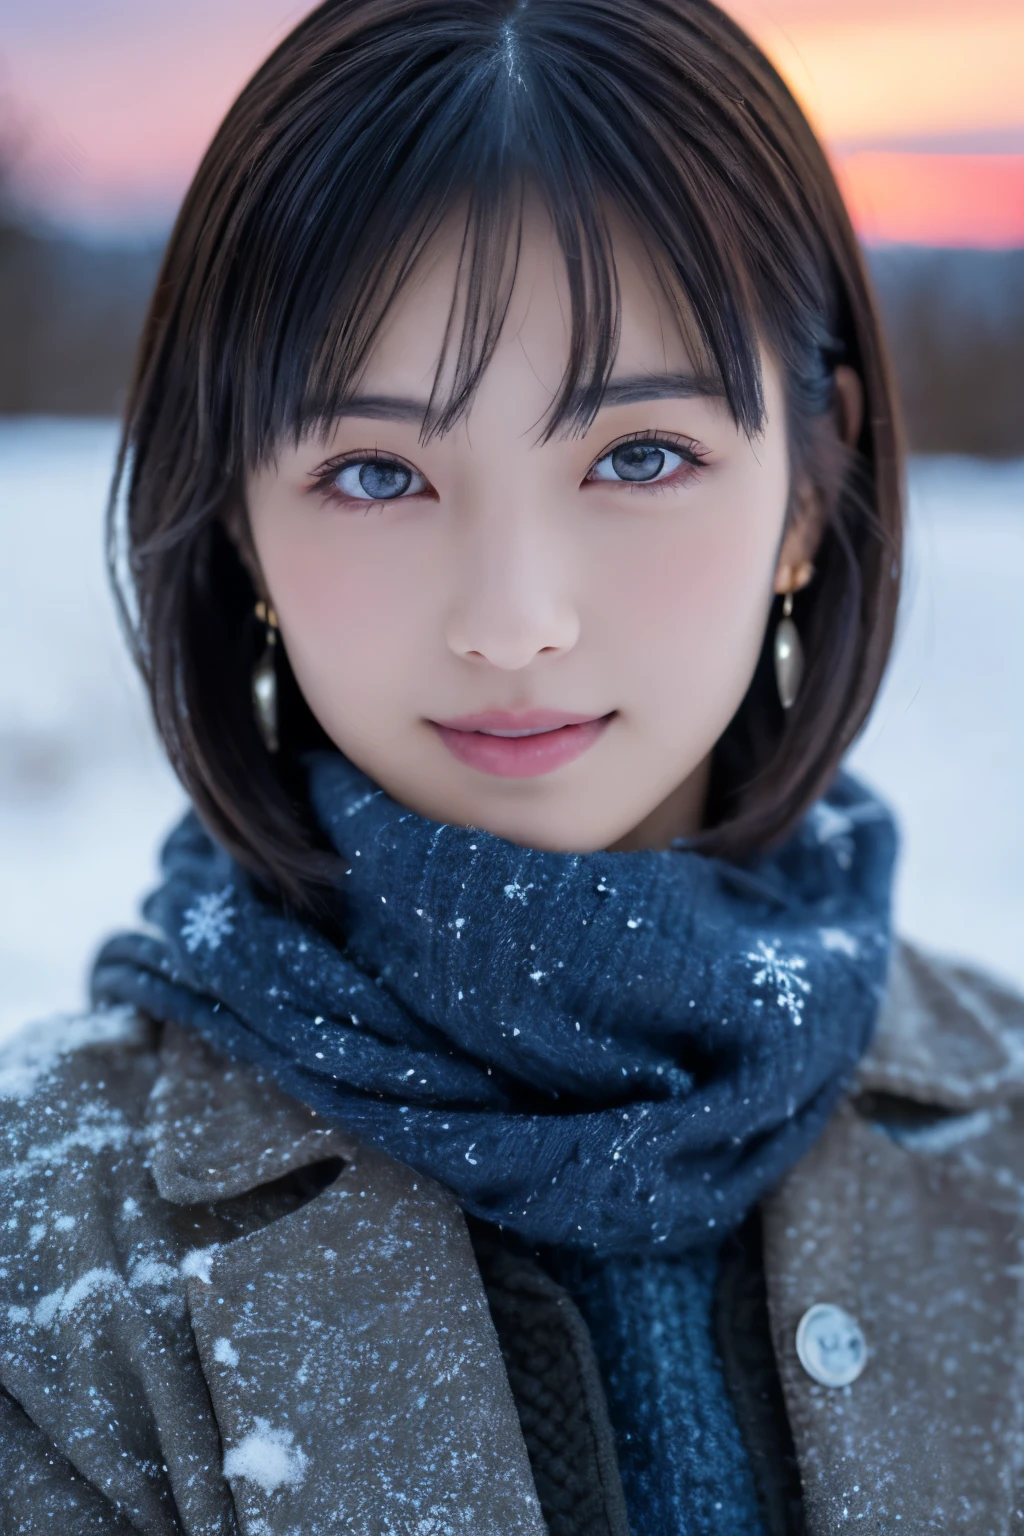 1 девочка, (Зимняя одежда:1.2), красивая японская актриса, 
фотогеничный, Юкихимэ, длинные ресницы, серьги снежинки,
(Необработанное фото, Лучшее качество), (Реальность, фотореалистичный:1.4), (кусок летит), 
красивые детализированные глаза, красивые детализированные губы, Высокодетализированные глаза и лицо, 
ПЕРЕРЫВ — это
 (Замерзшее снежное поле в зимней Лапландии), (Последние остатки сумеречного неба:1.4), 
неземная красота, заснеженное дерево, рыхлый снег, 
Снежный полевой пейзаж в сумерках, 
Цветовая гамма индиго и темно-киноварь, Драматическое письмо, фантастическая атмосфера, 
ПЕРЕРЫВ — это 
Perfect Anatomy, все тело стройное, маленькая грудь, (короткие волосы:1.3), Ангел&#39;улыбка, 
кристаллоподобная кожа, сделать глаза ясными, ловить свет